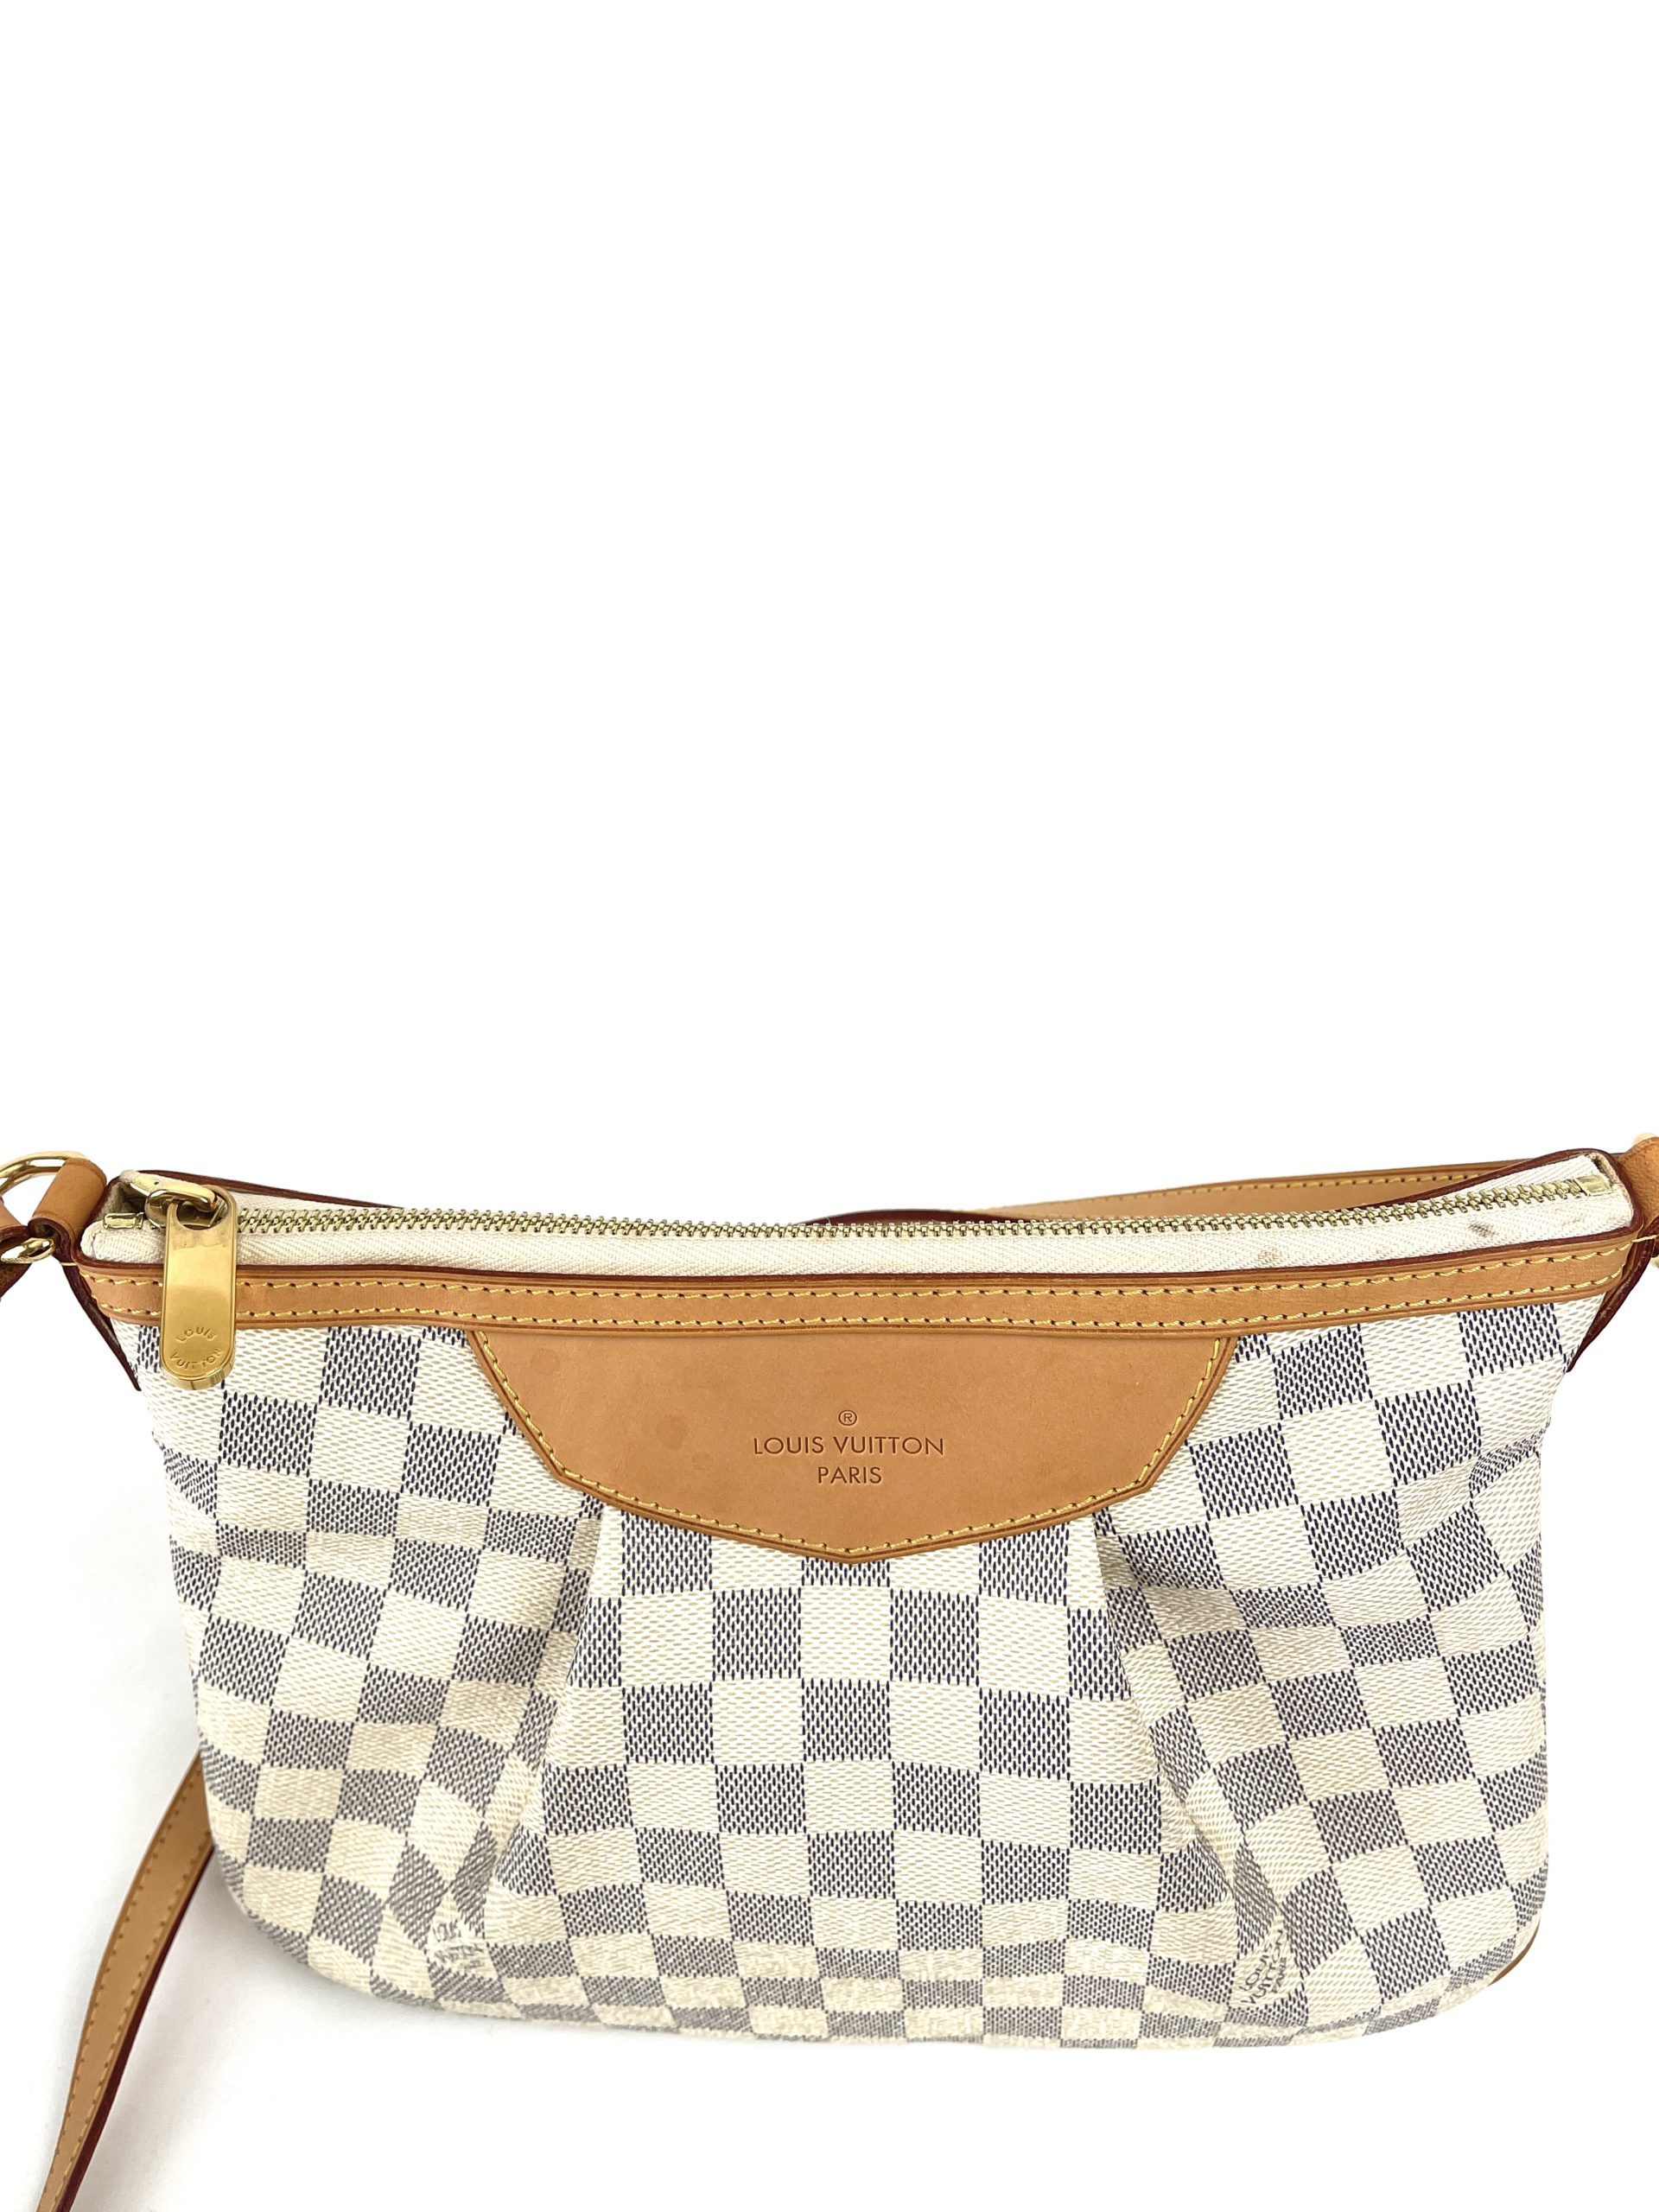 Louis Vuitton Siracusa PM Damier azur Bag – The Find